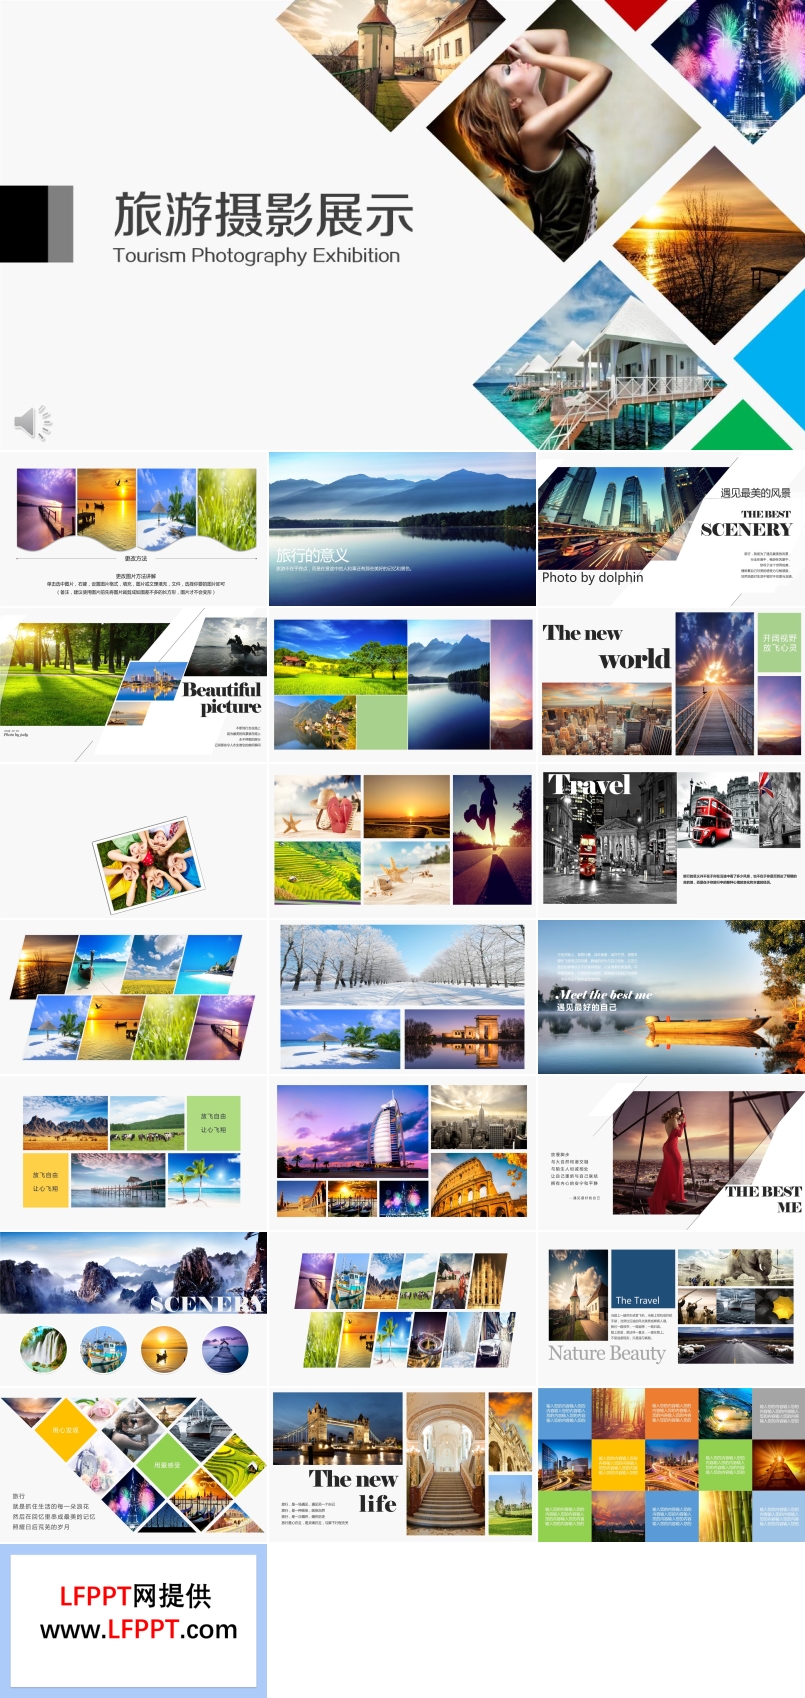 旅游旅行摄影电子相册展示PPT模板